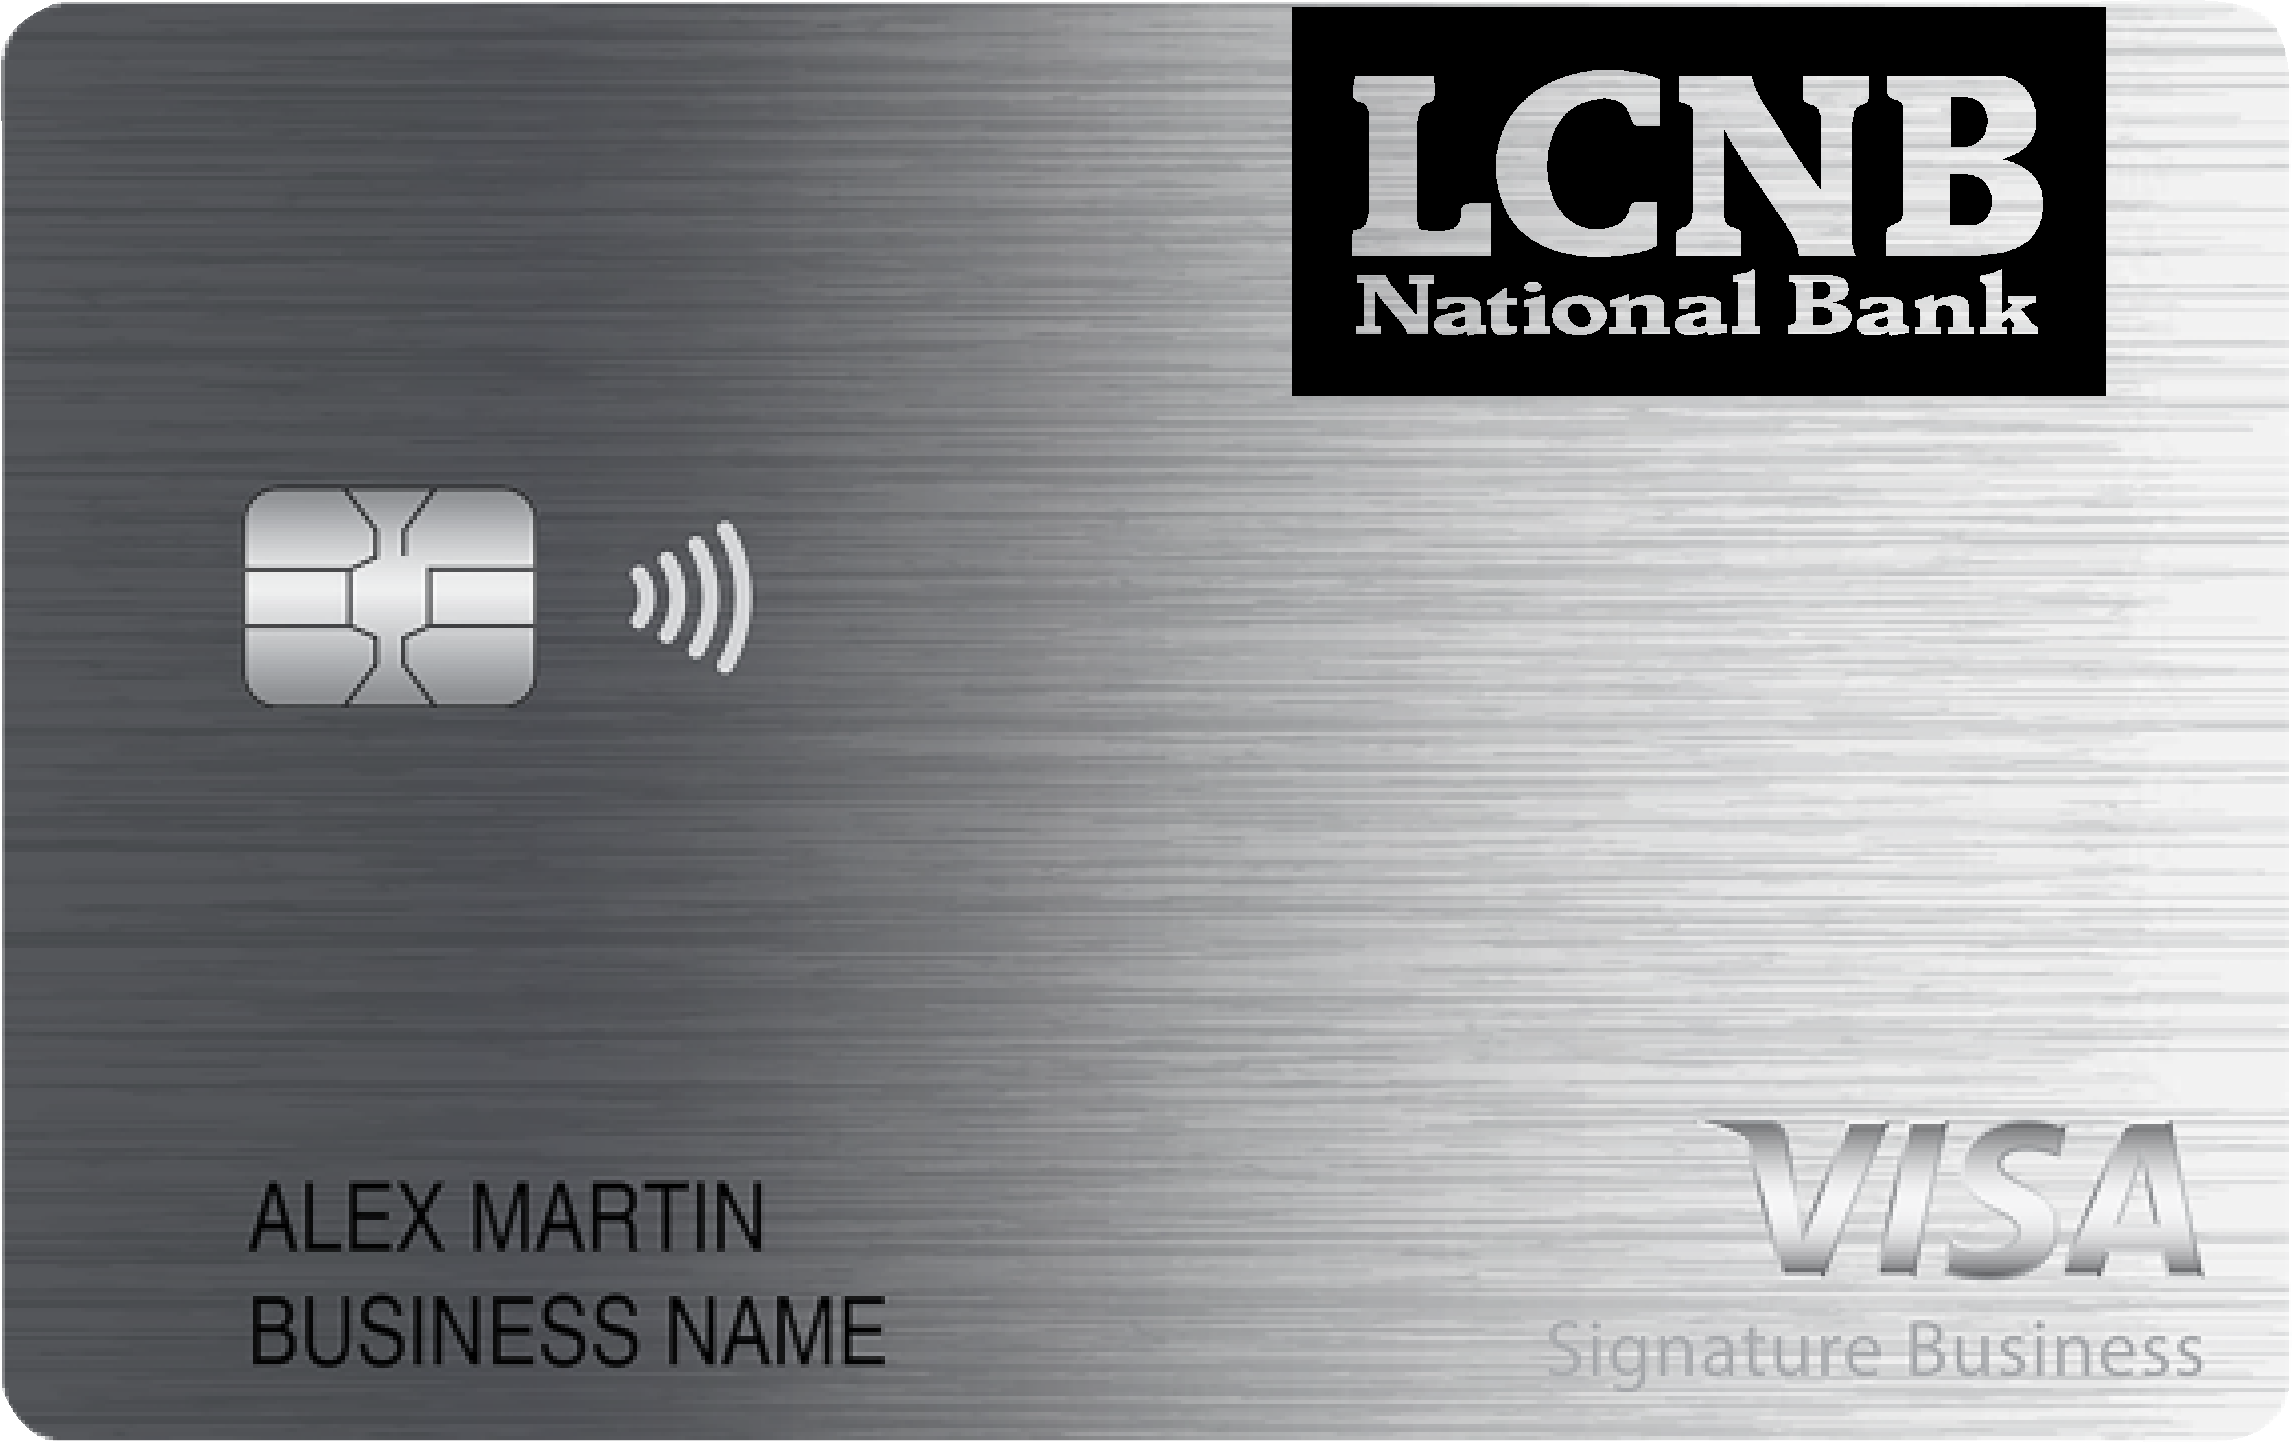 LCNB National Bank Smart Business Rewards Card